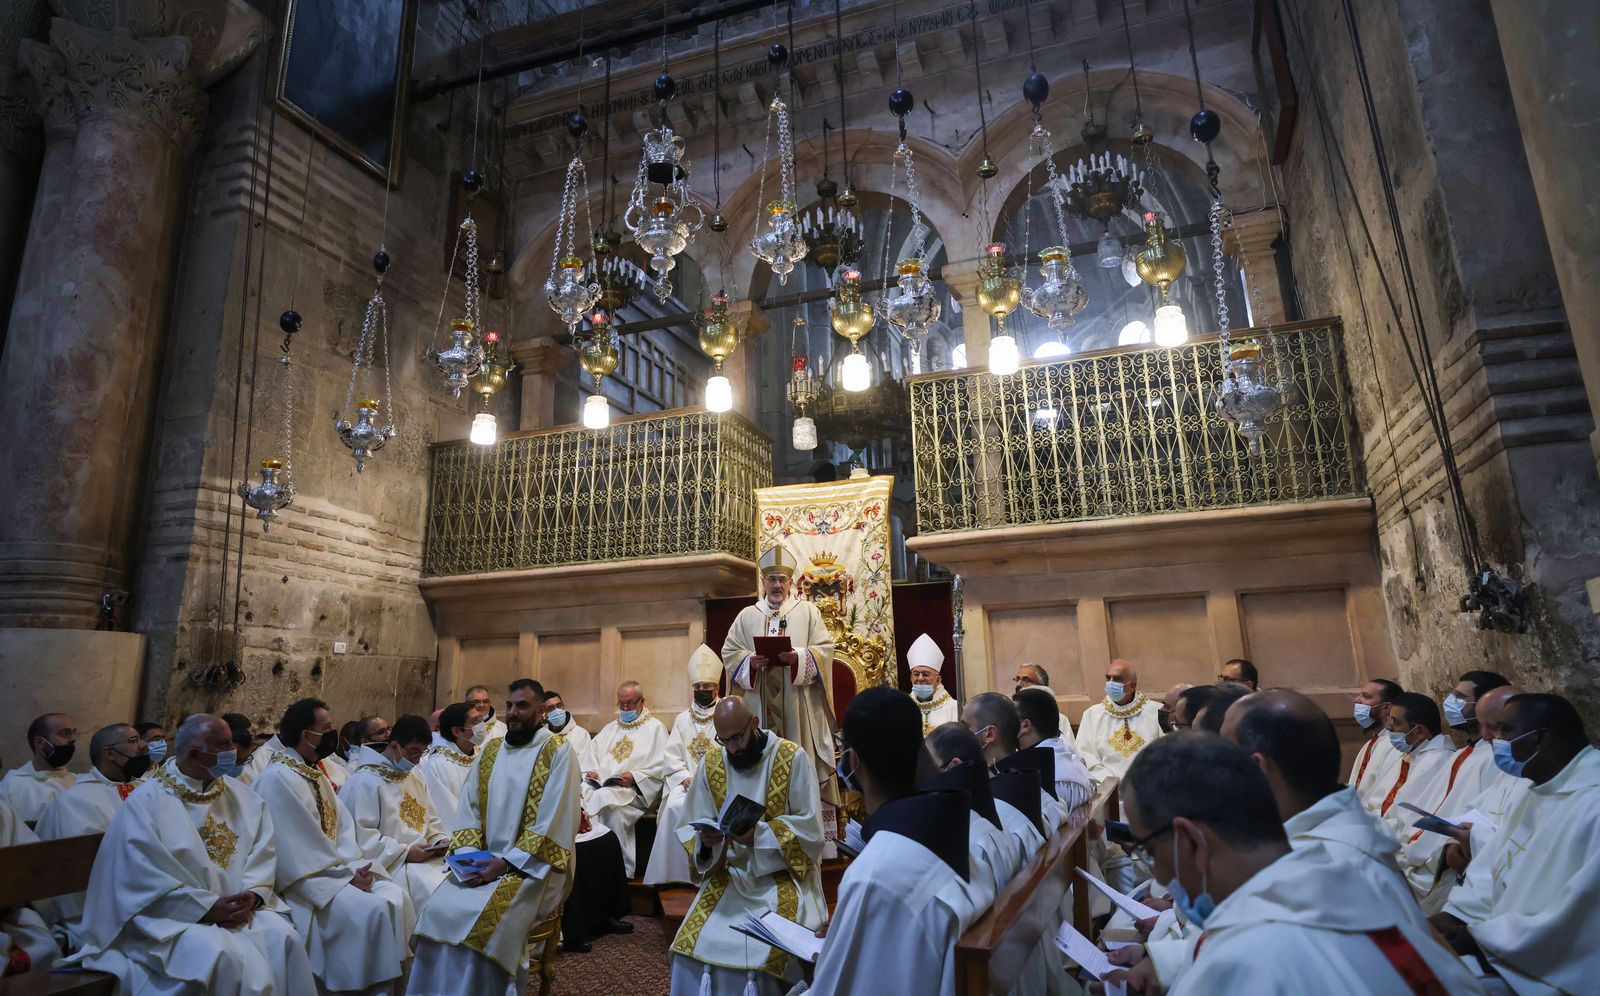 بطريرك القدس للاتين، بييرباتيستا بيتسابالا، يرأس قداسا في كنيسة القيامة بالقدس 1 أبريل ، 2021 - AFP